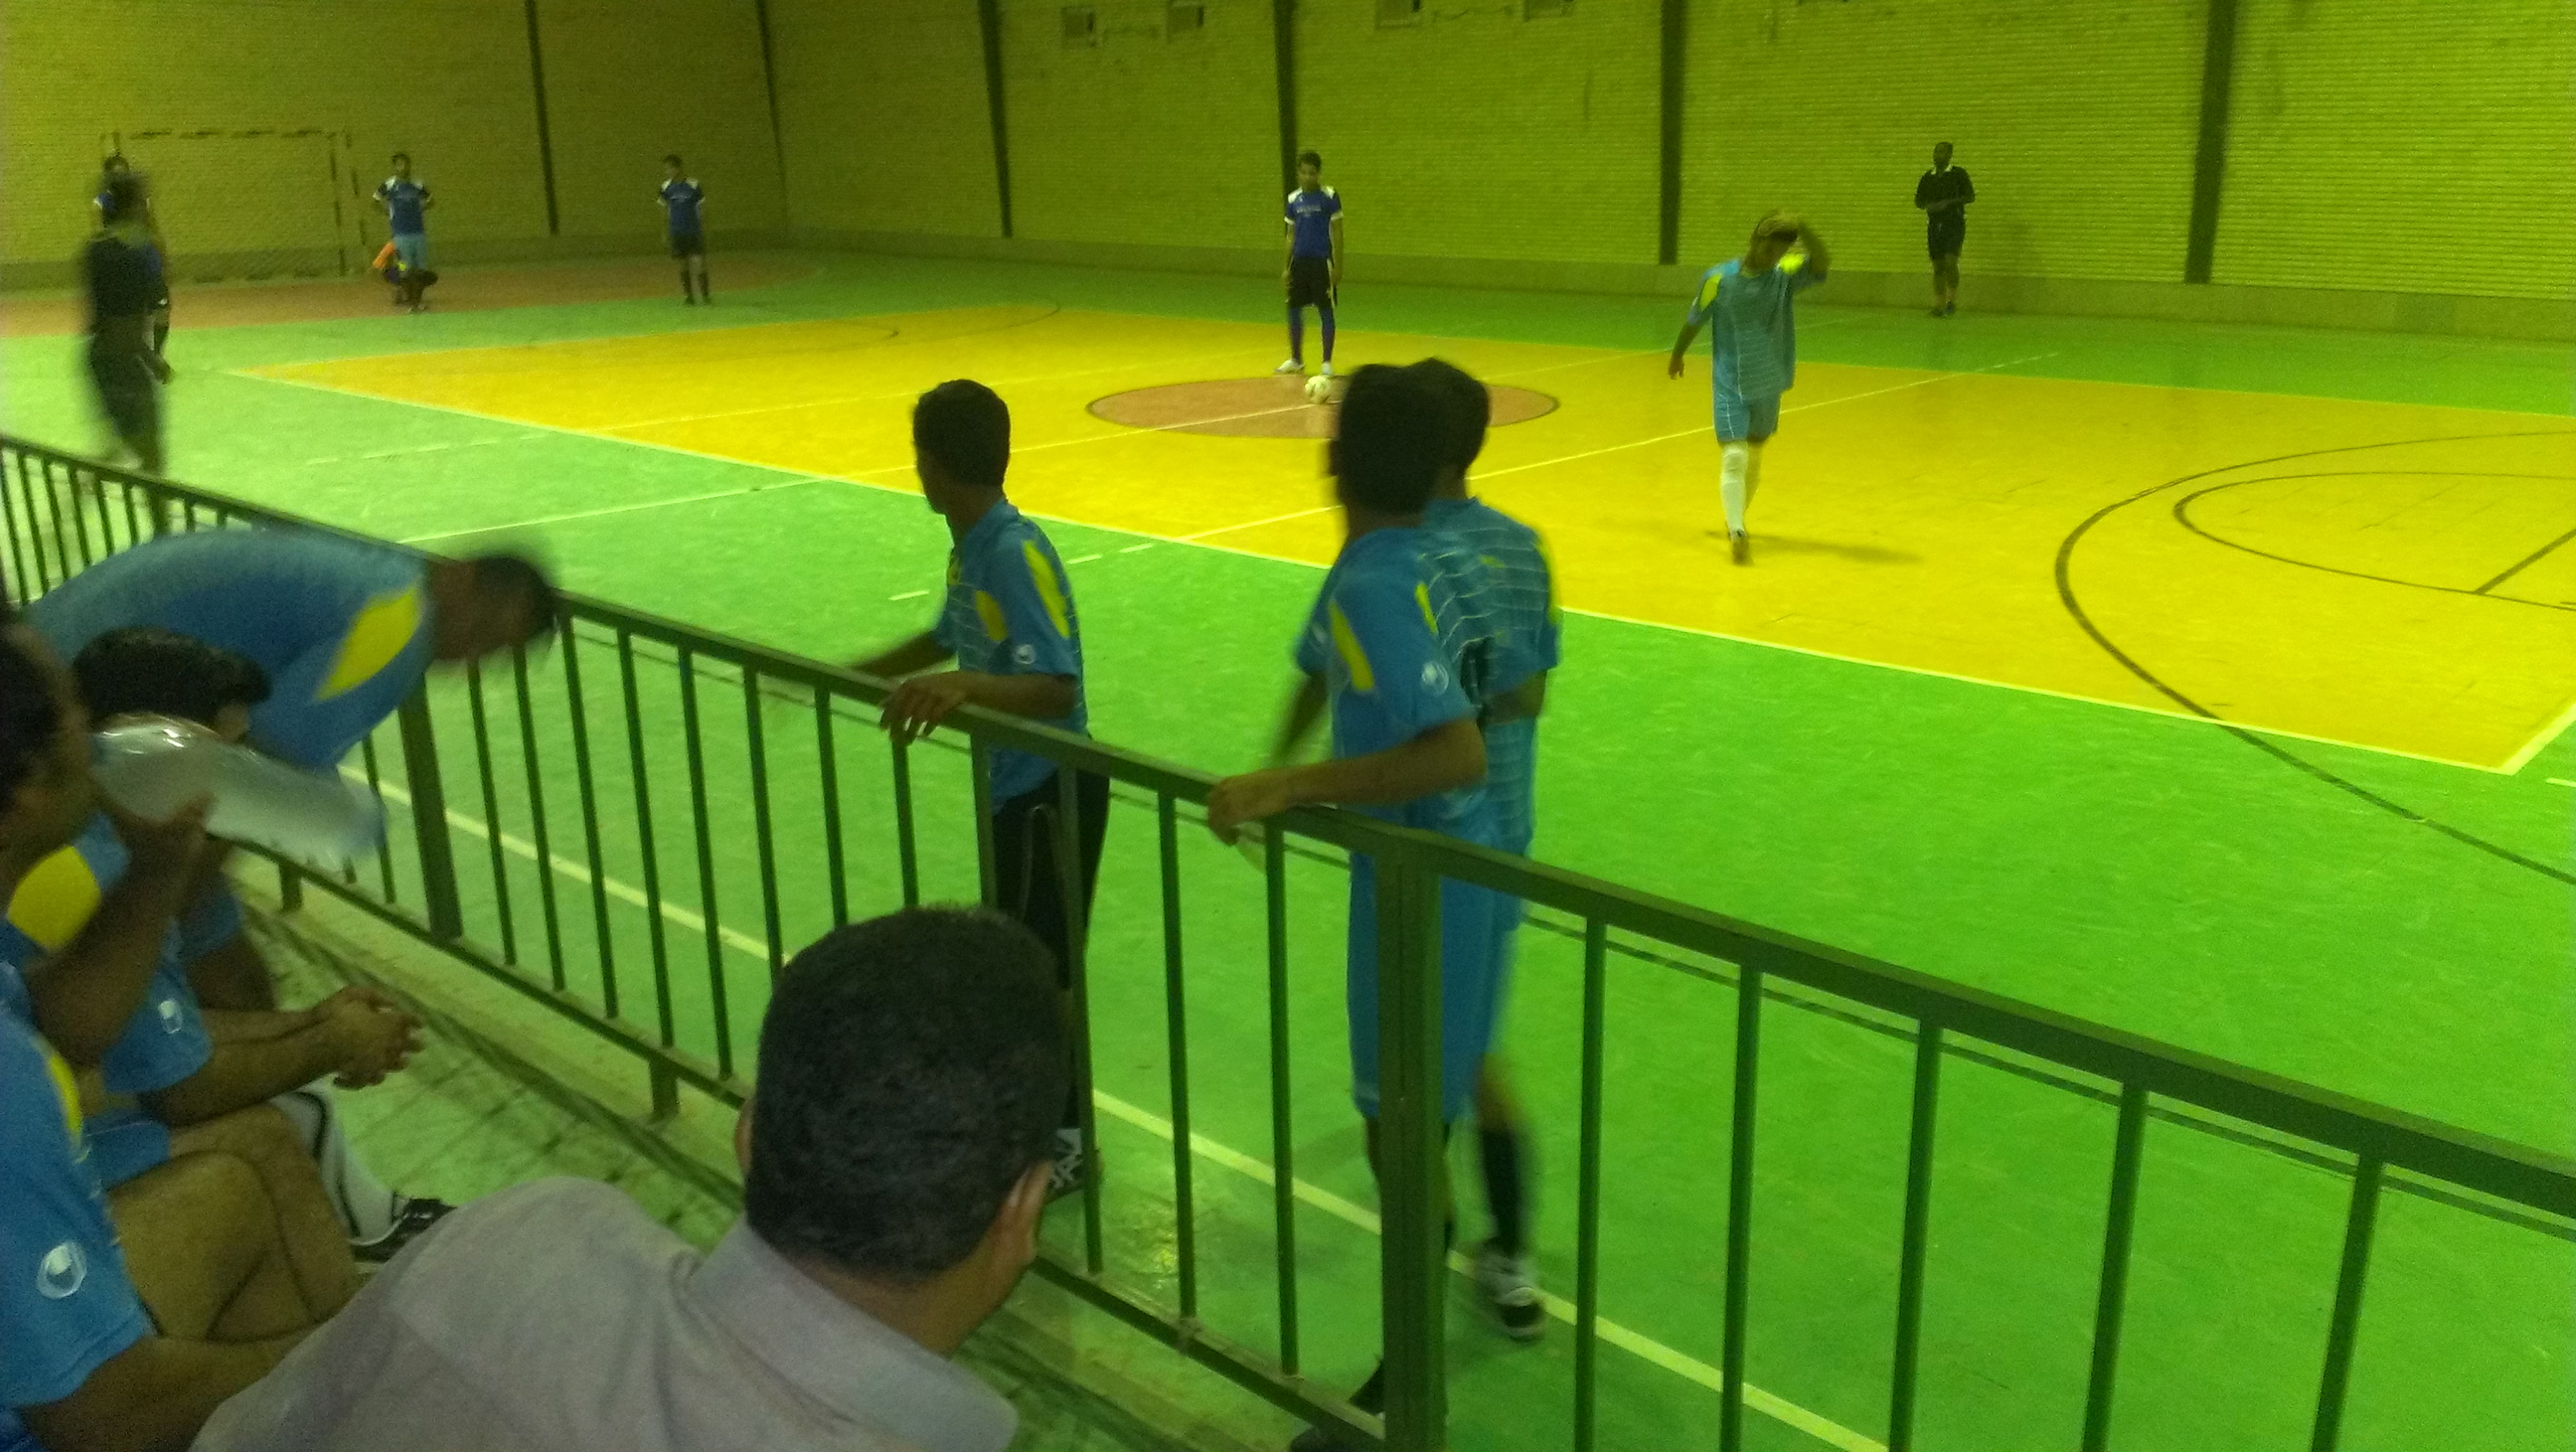  بازیکنان استقلال عصر روز جمعه آخرین جلسه تمرینی خود قبل از مصاف با غدیر بلبل اباد برگزار کرد.